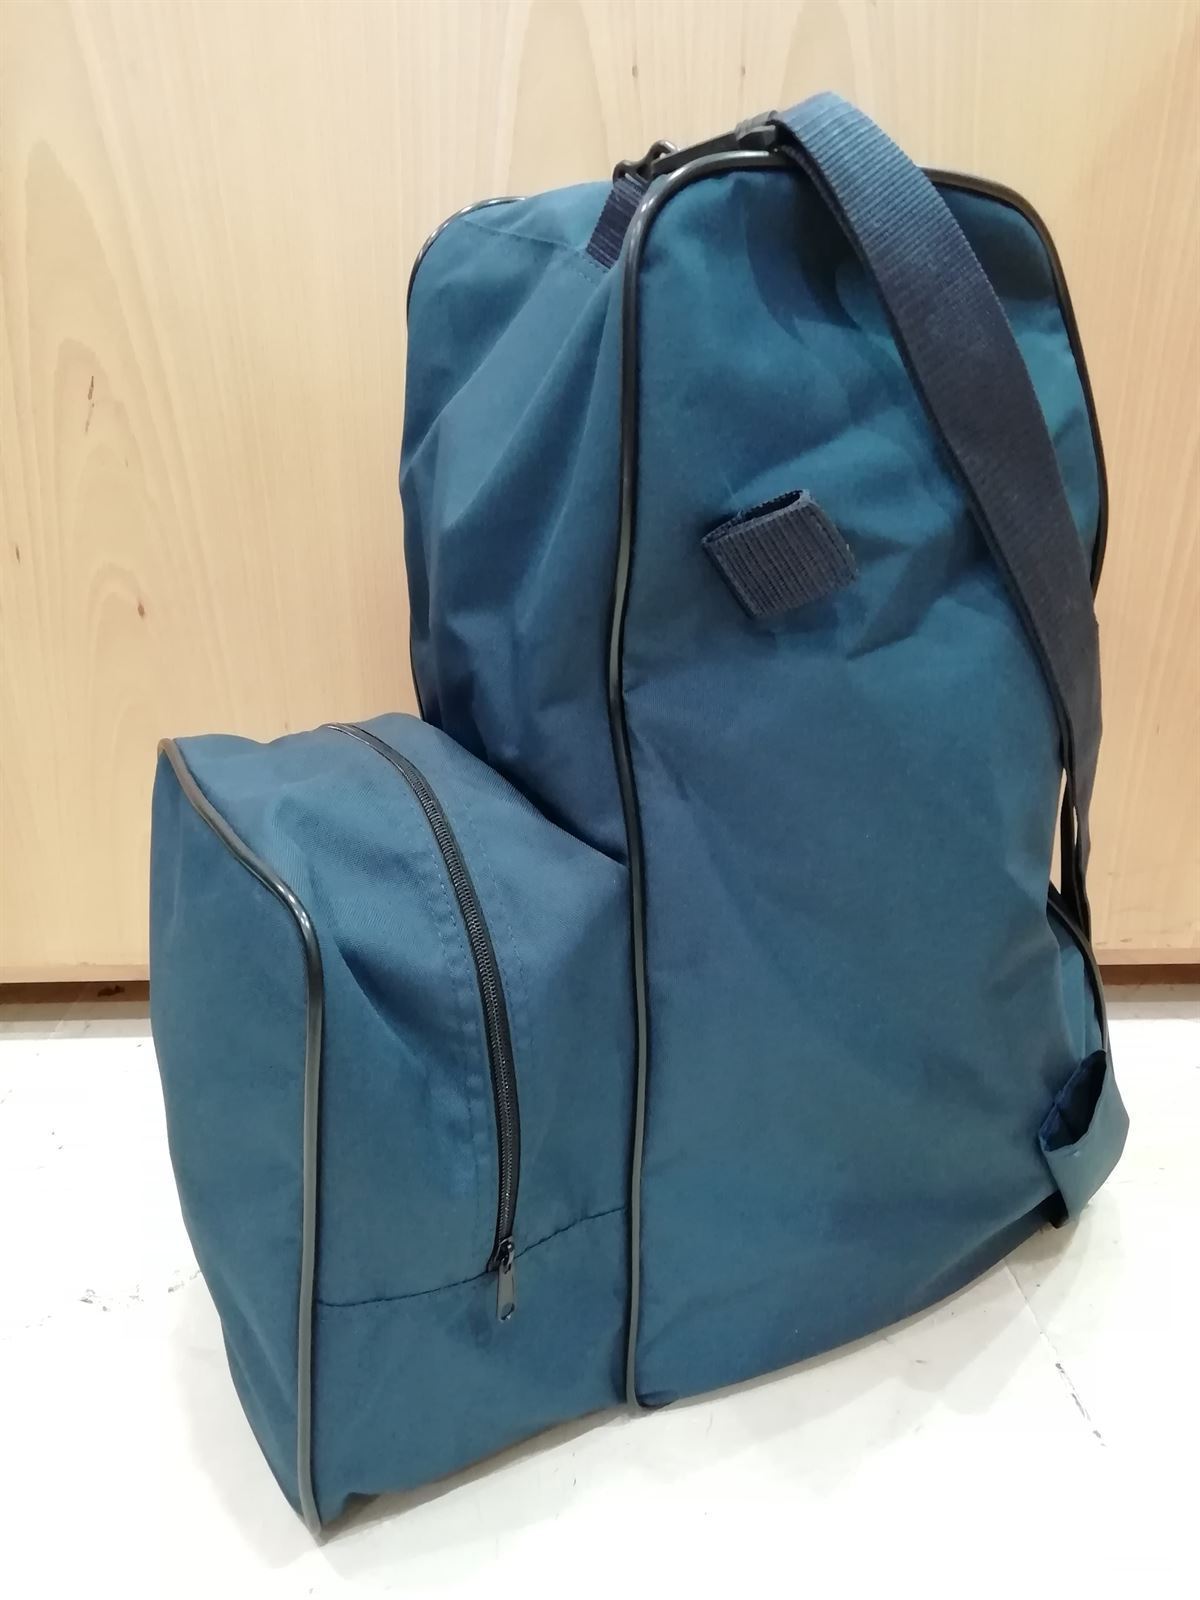 Bolsa para botas y casco ZALDI color azul marino - Imagen 1